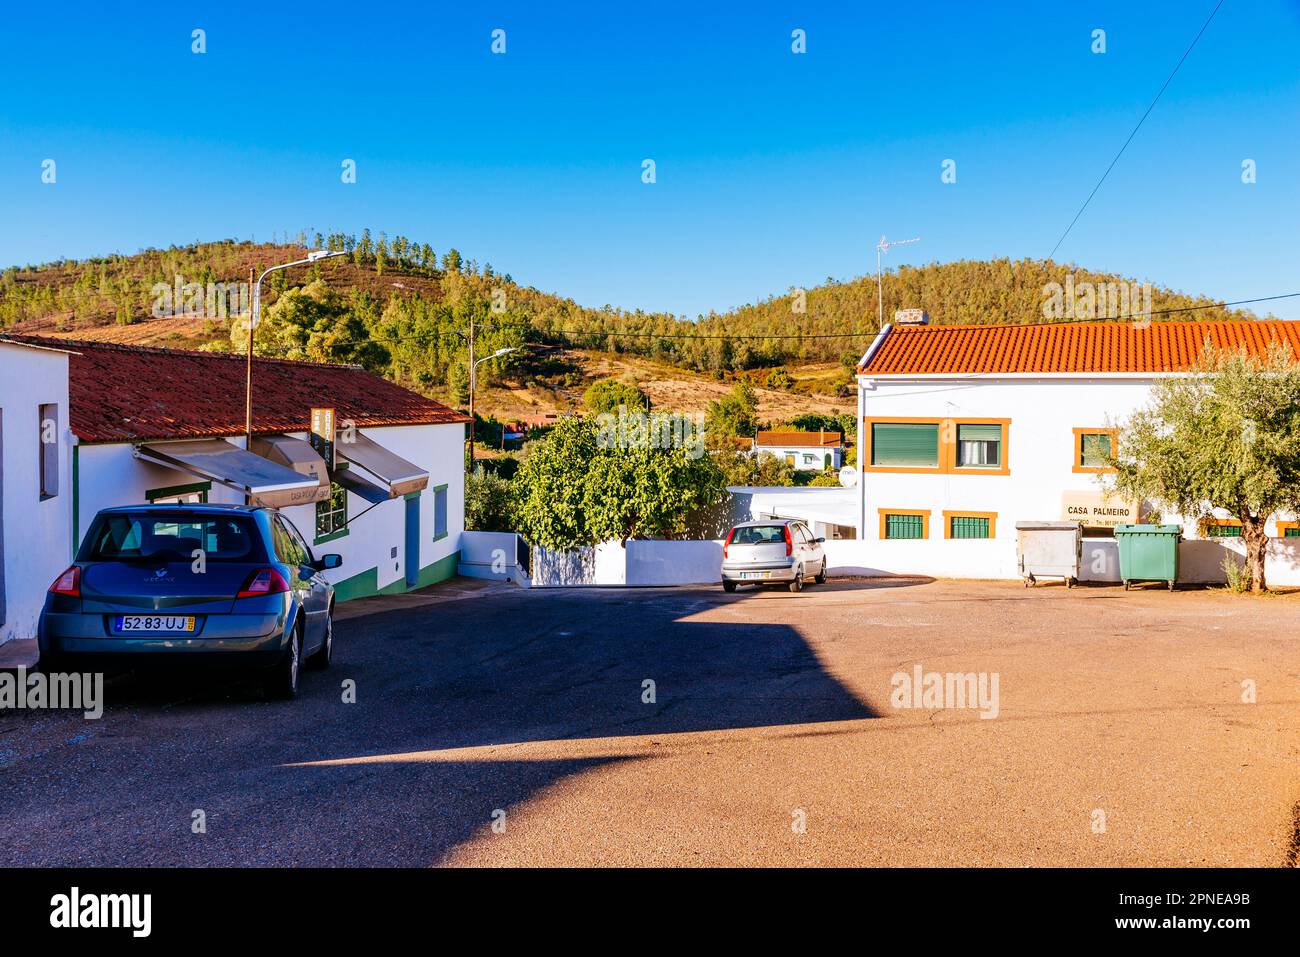 The village of El Marco, Esperança, Arronches, Alto Alentejo, Portalegre, Portugal, Europe Stock Photo